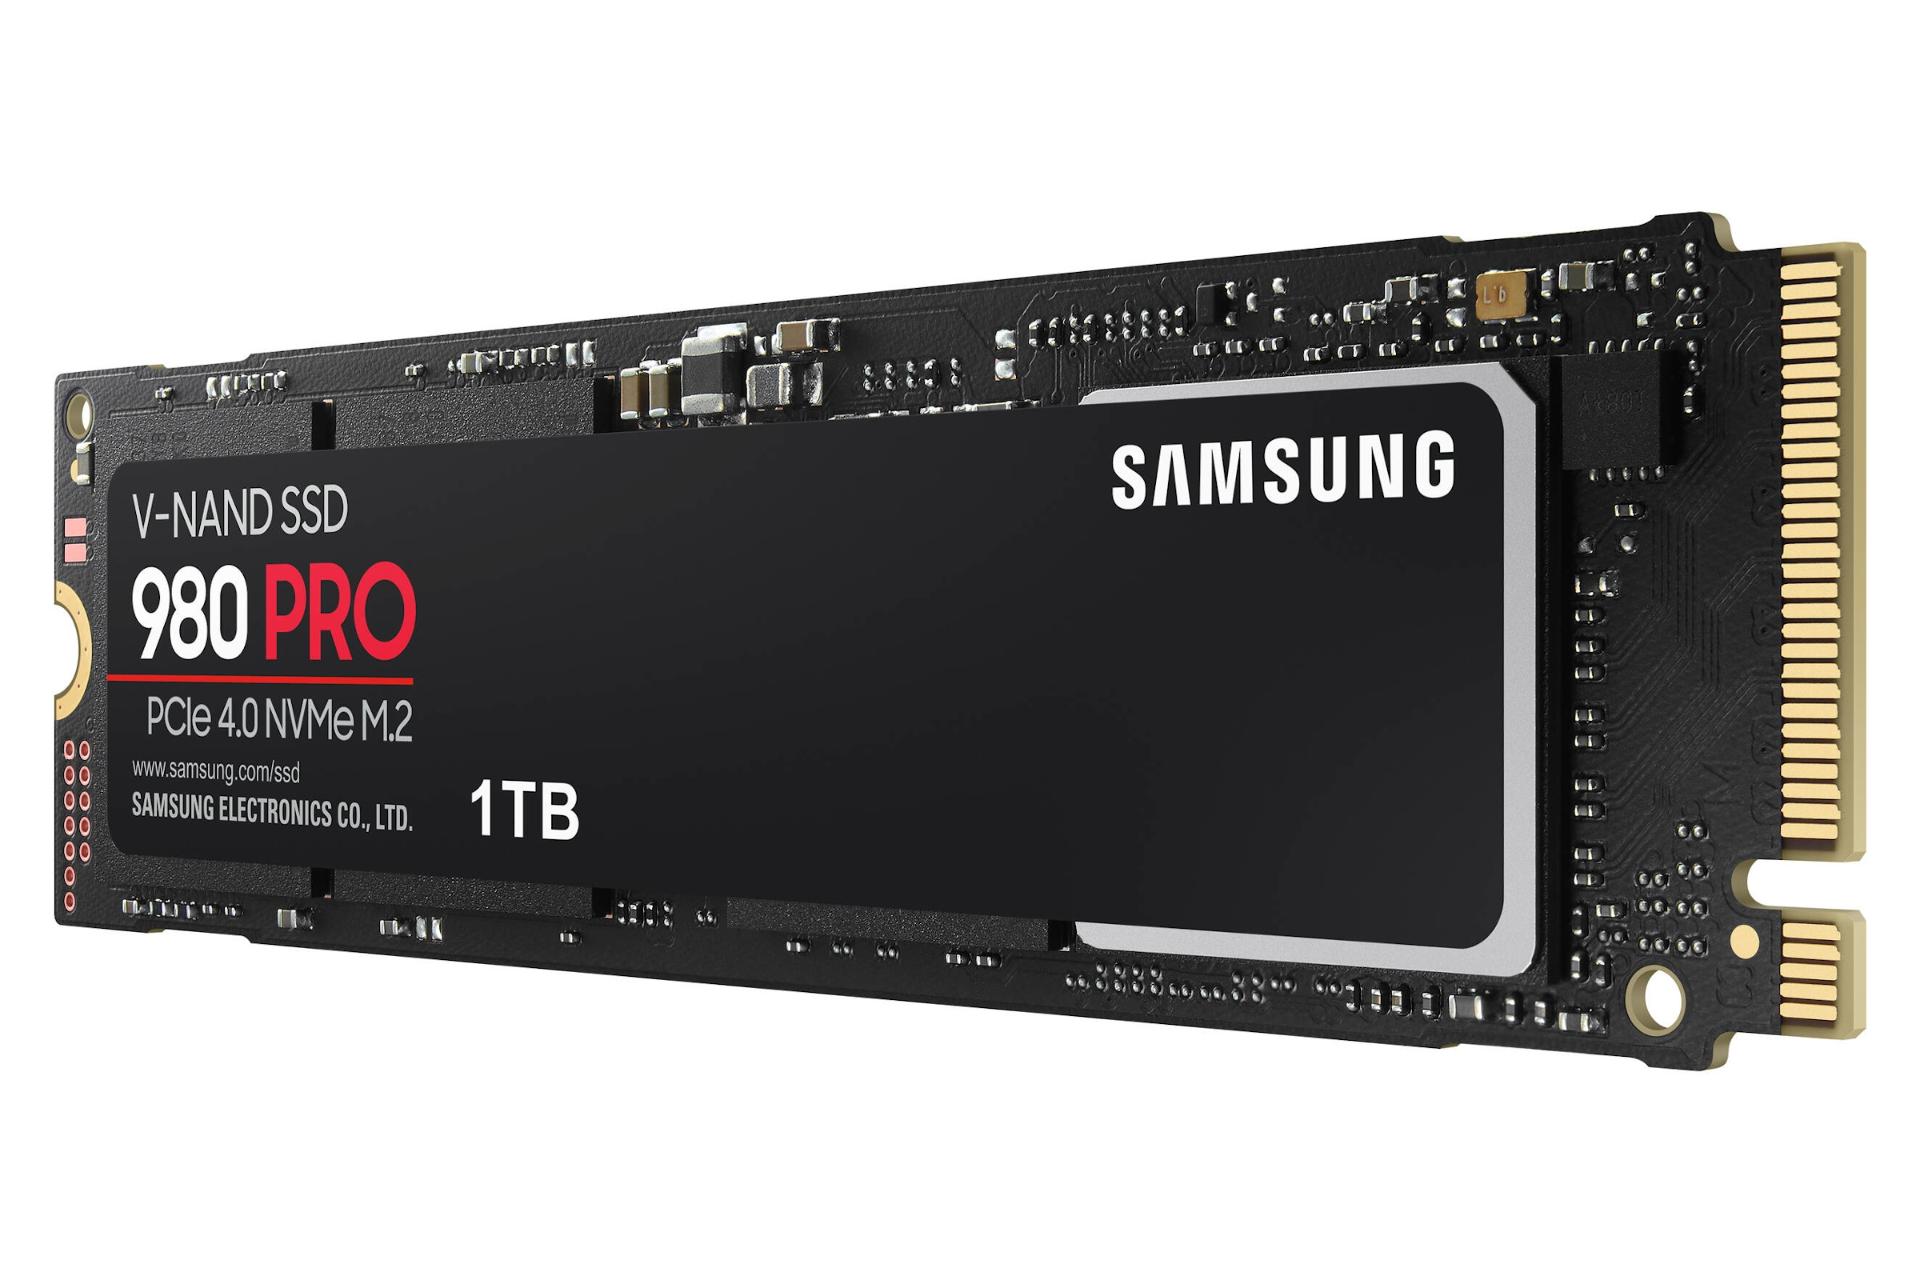 مرجع متخصصين ايران نماي راست SSD سامسونگ 980 پرو NVMe M.2 ظرفيت 1 ترابايت Samsung 980 Pro